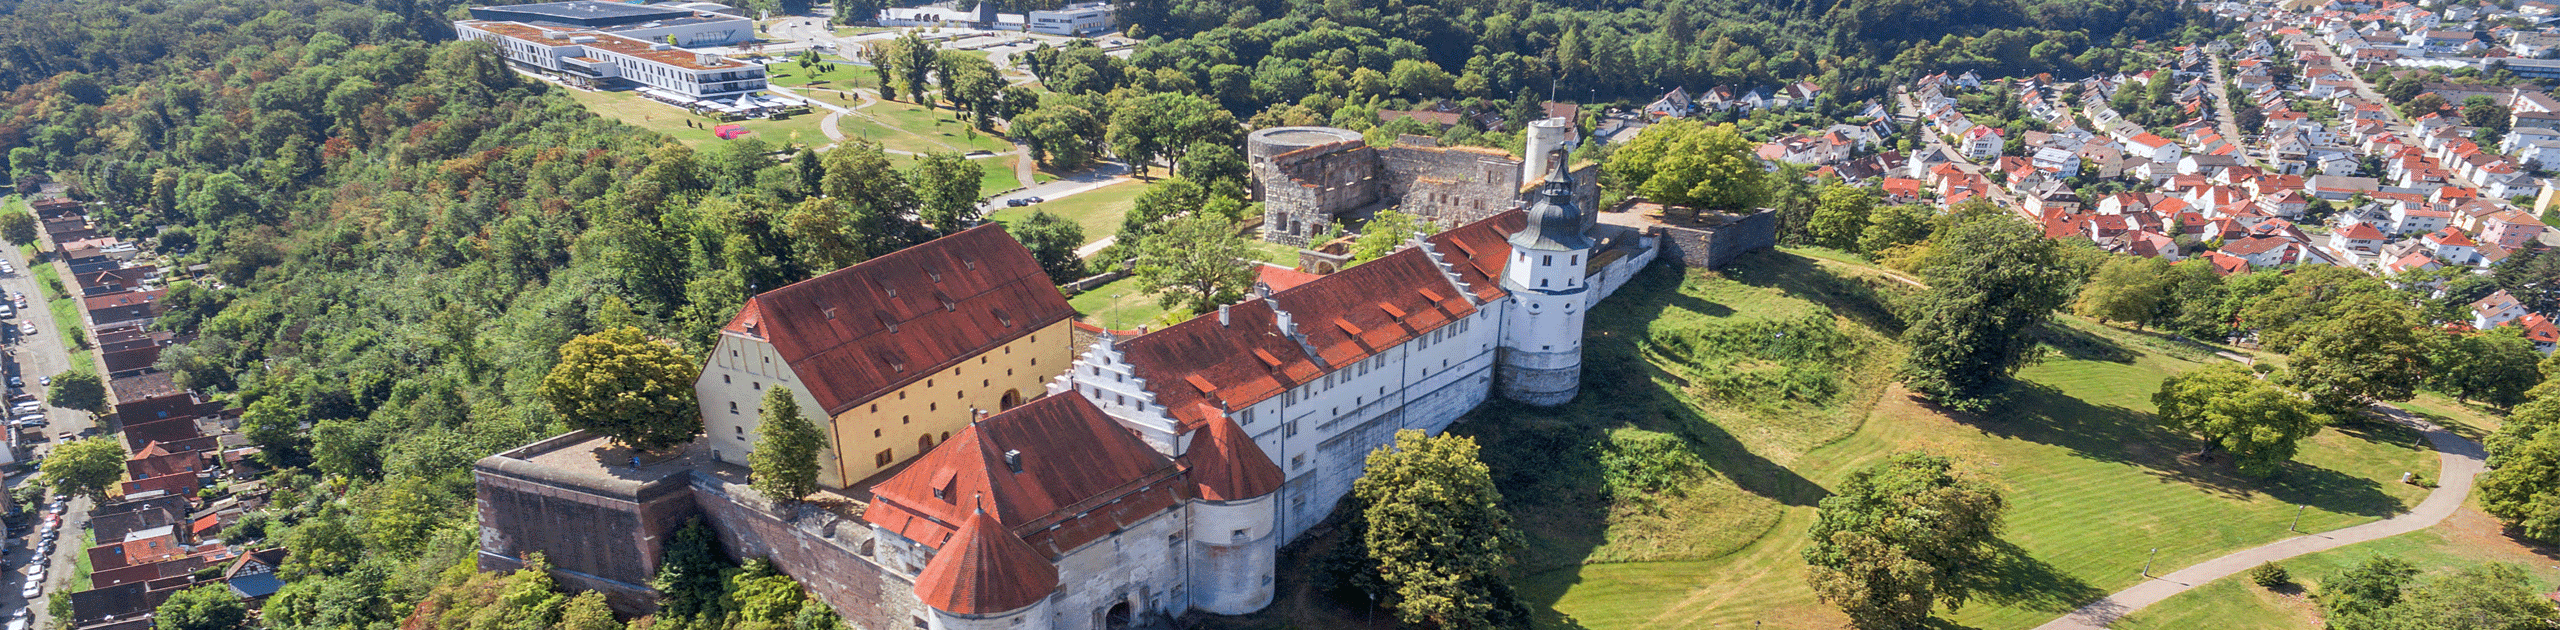 Schlossberg mit Schloss Hellenstein, Foto: Daniel Paus - cmc